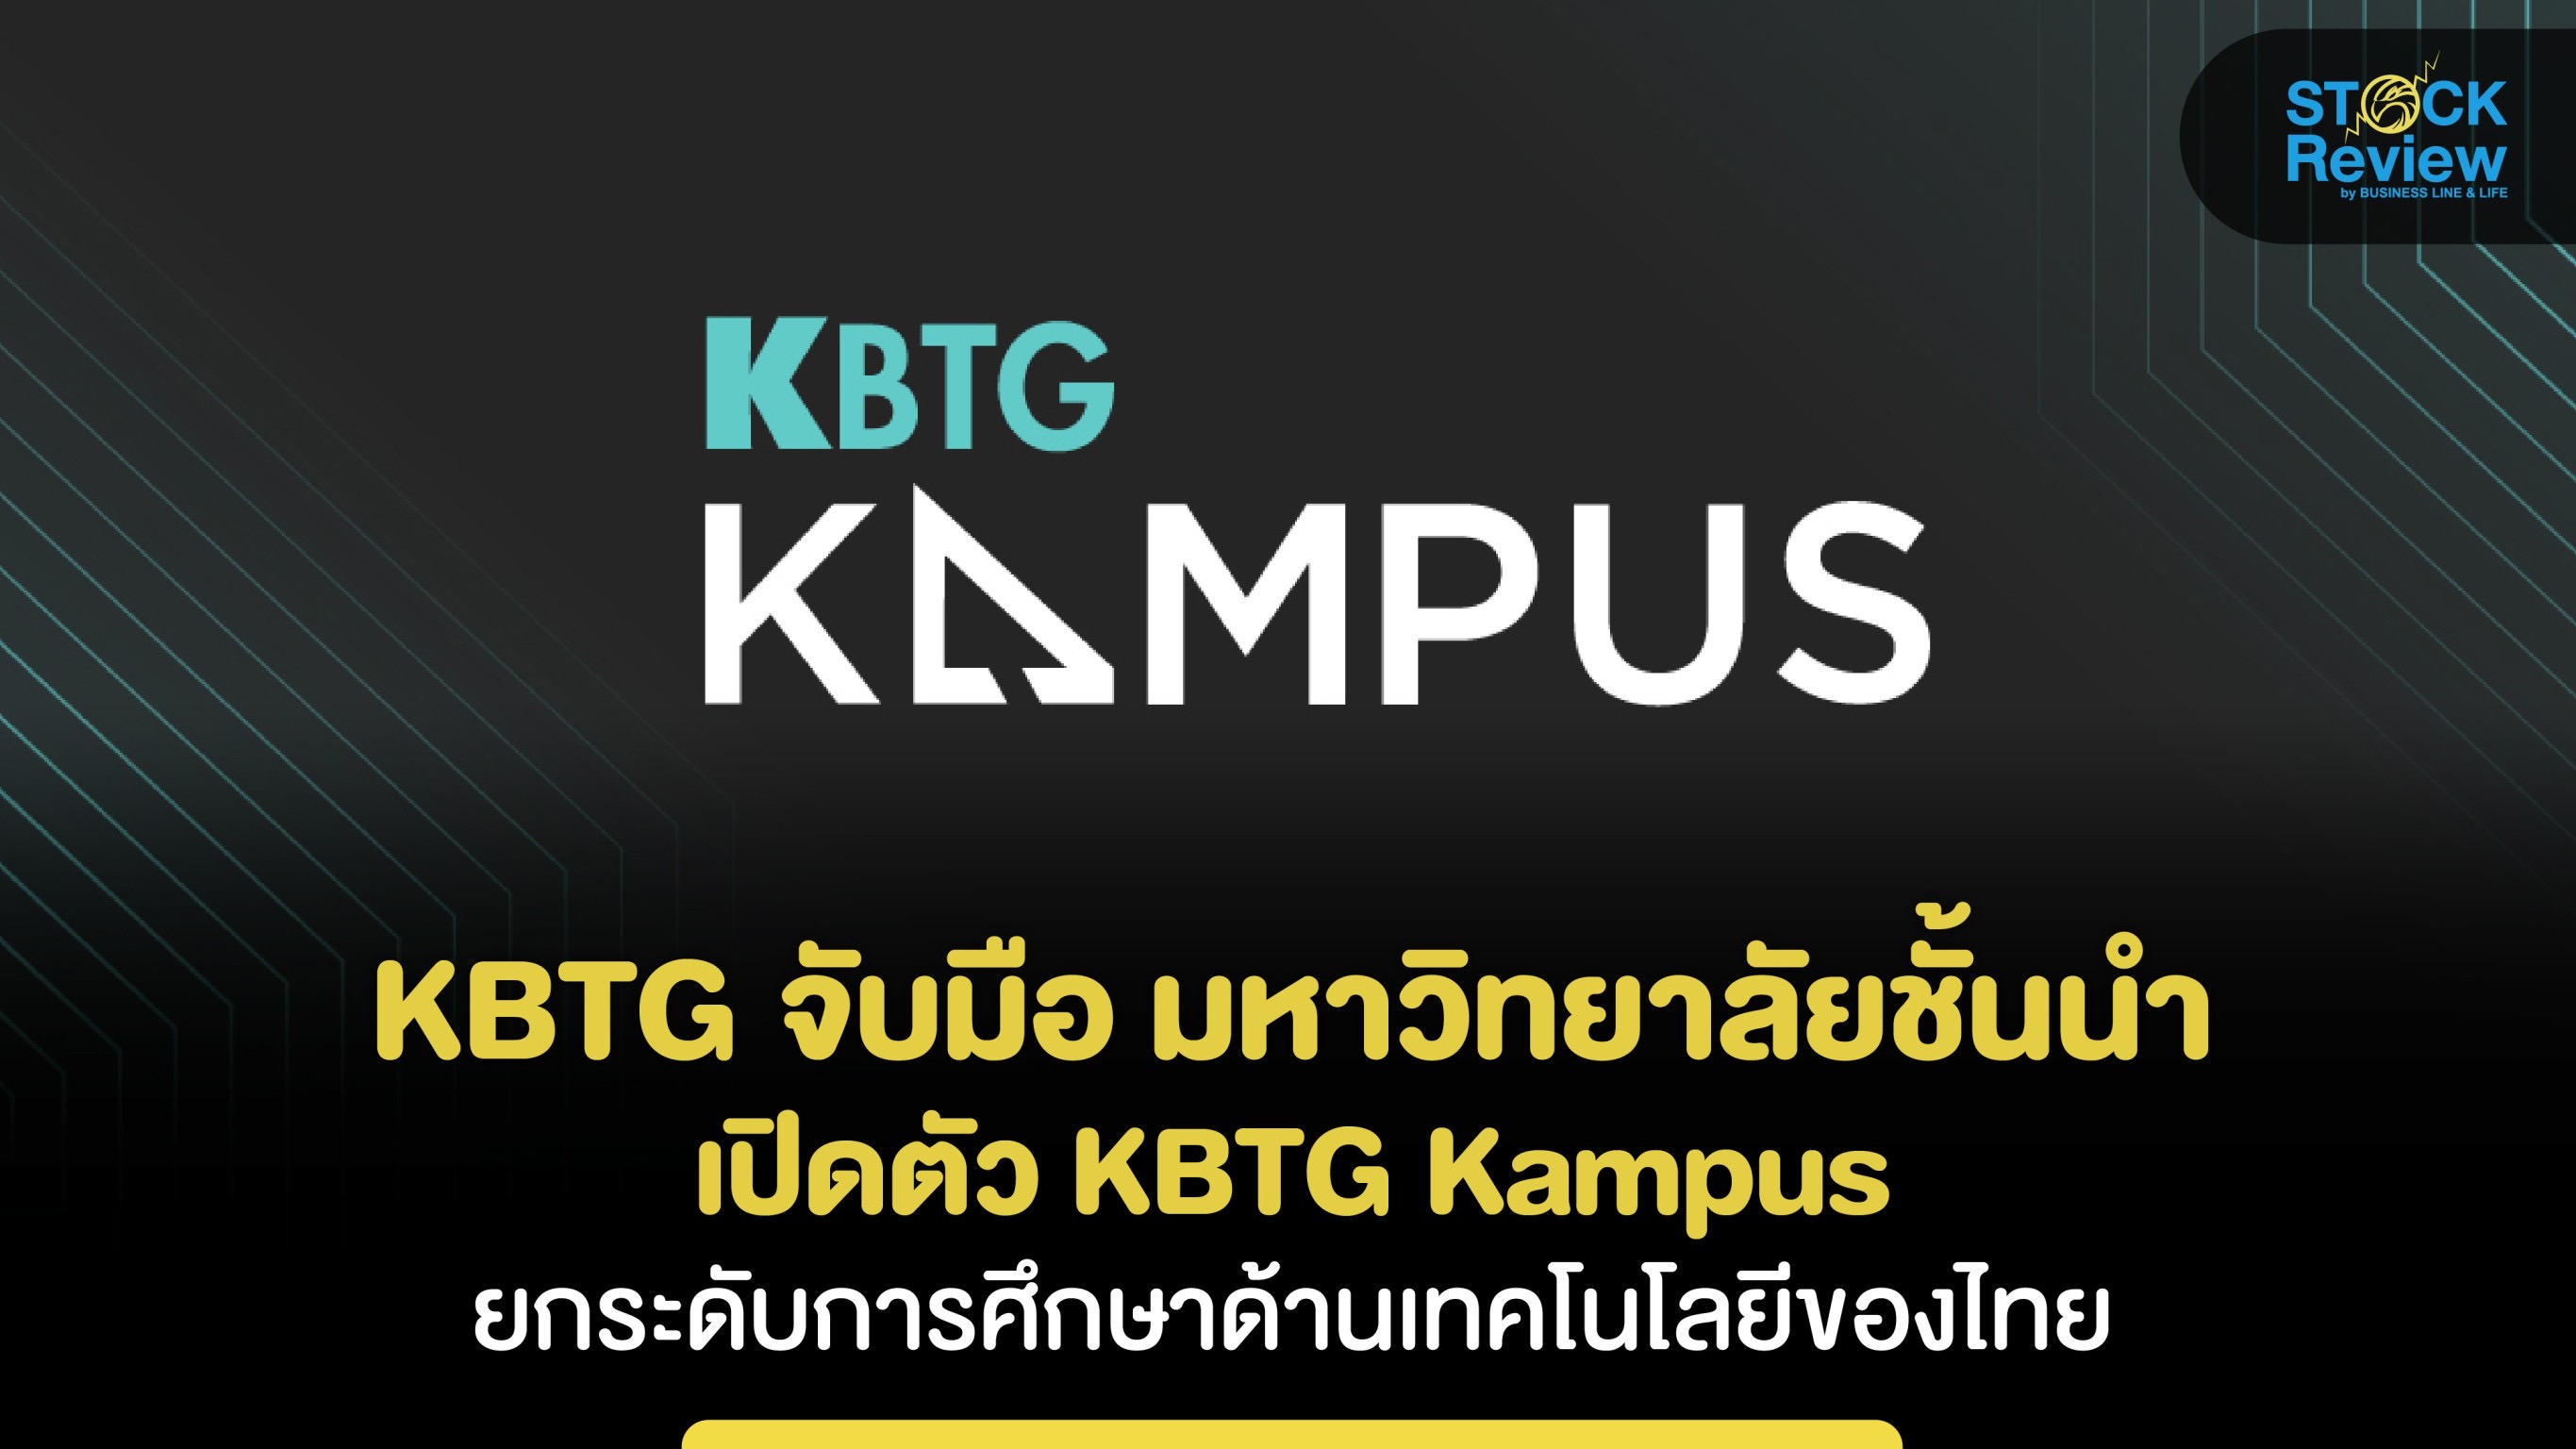 KBTG จับมือ มหาวิทยาลัยชั้นนำ เปิดตัว KBTG Kampus ยกระดับการศึกษาด้านเทคโนโลยีของไทย